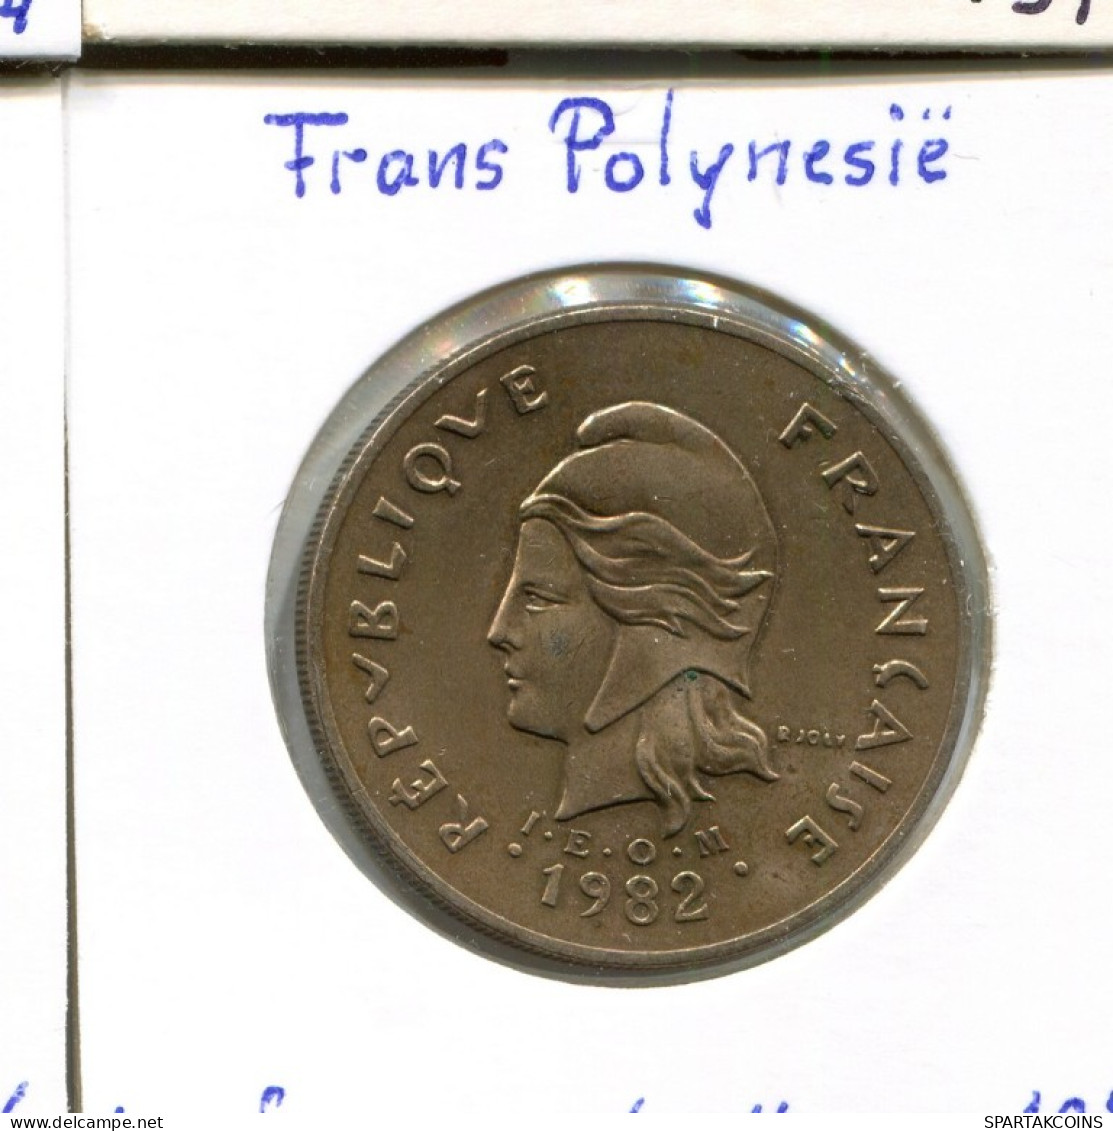 100 FRANCS 1982 FRENCH POLYNESIA Colonial Coin #AM516.U.A - Polinesia Francesa